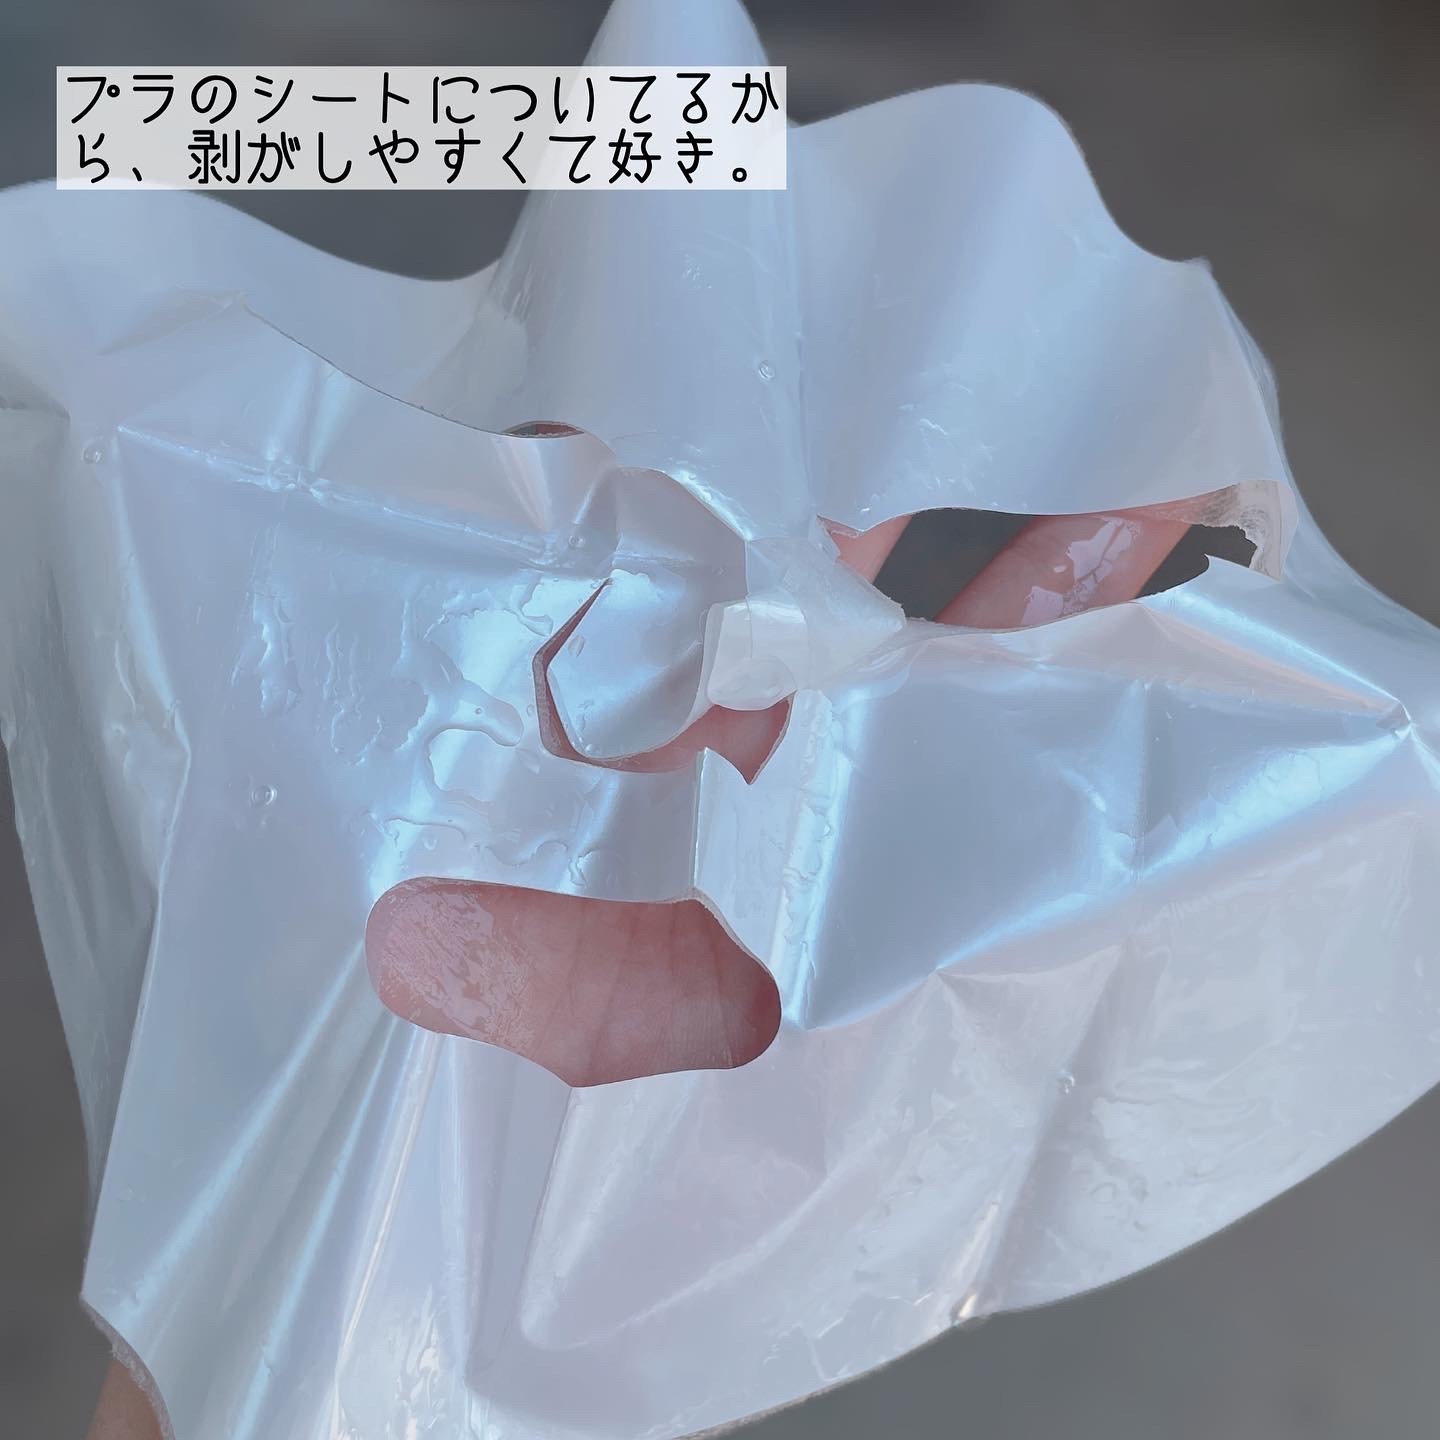 我的美麗日記(My Beauty Diary) 復活草 ハイドレーションマスクの良い点・メリットに関するなゆさんの口コミ画像3